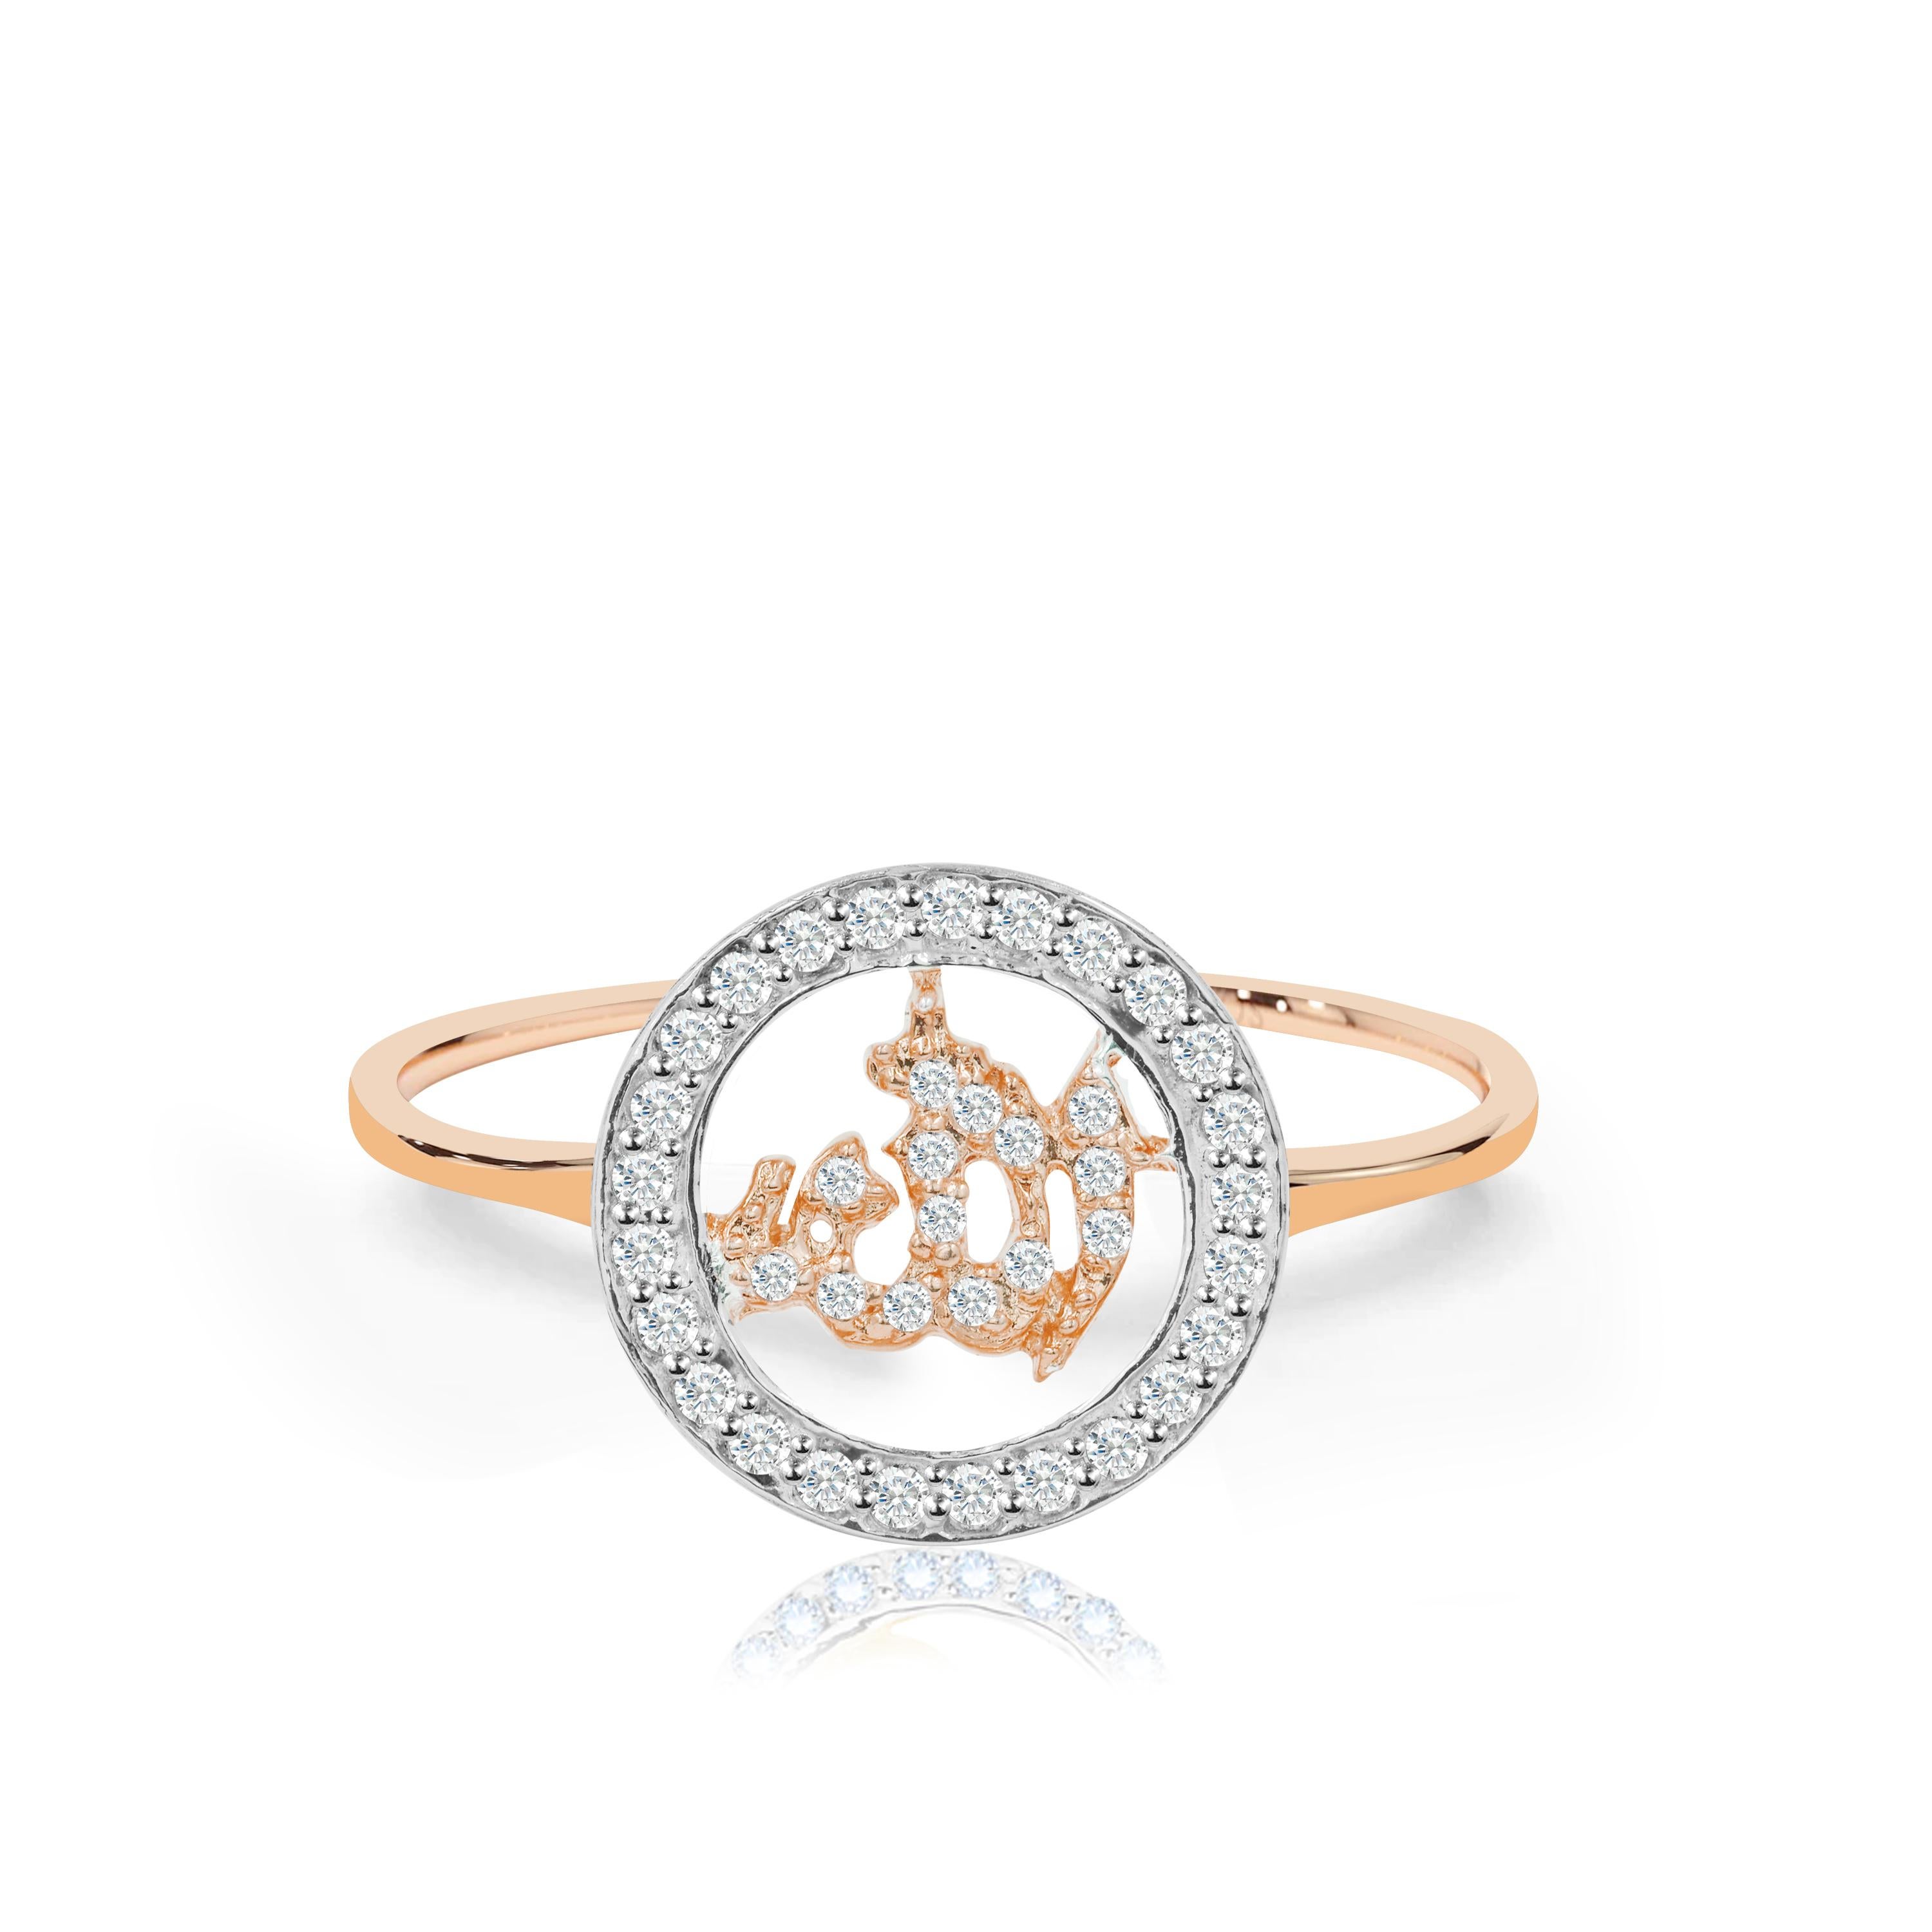 For Sale:  14K Gold Diamond Religious Ring Allah Diamond Ring Islam Allah Ring Ring for Her 2